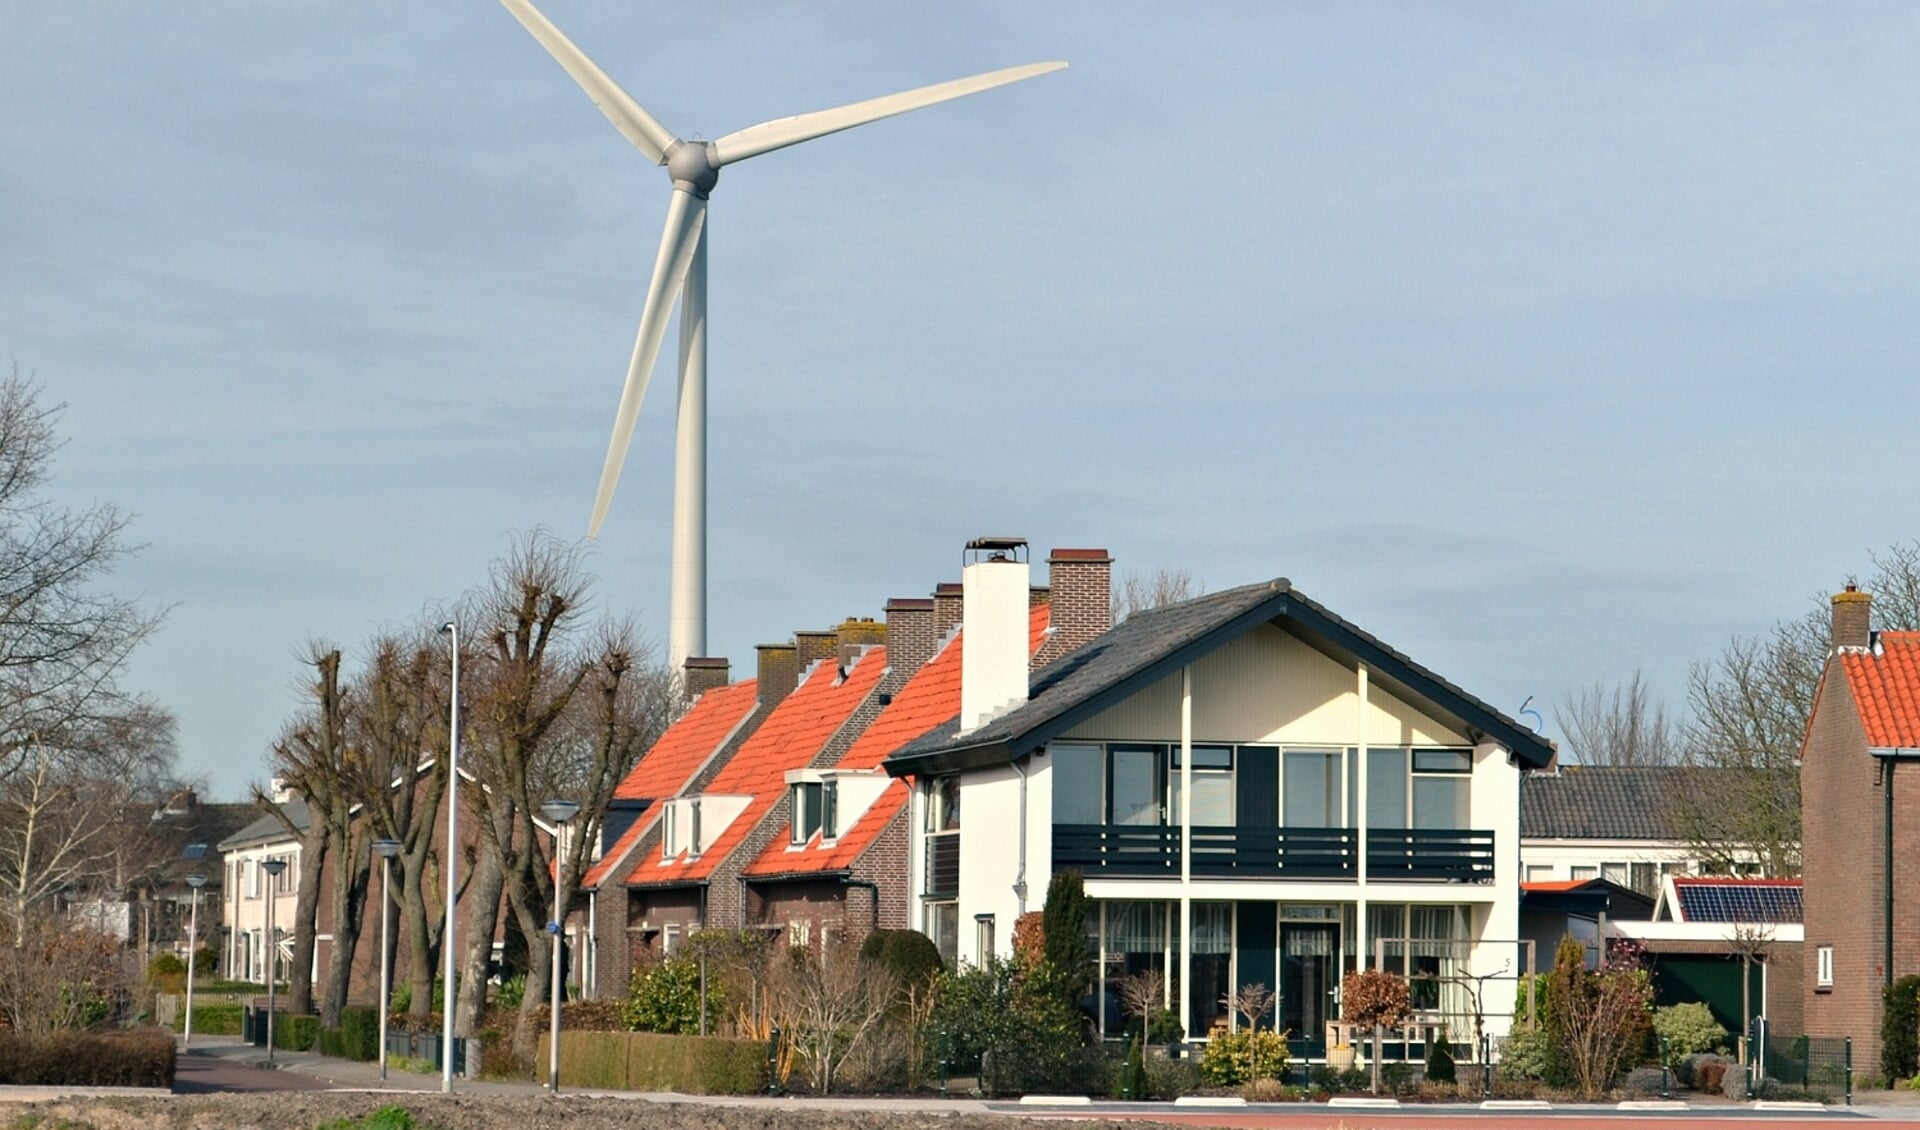 Windturbine in Geervliet.